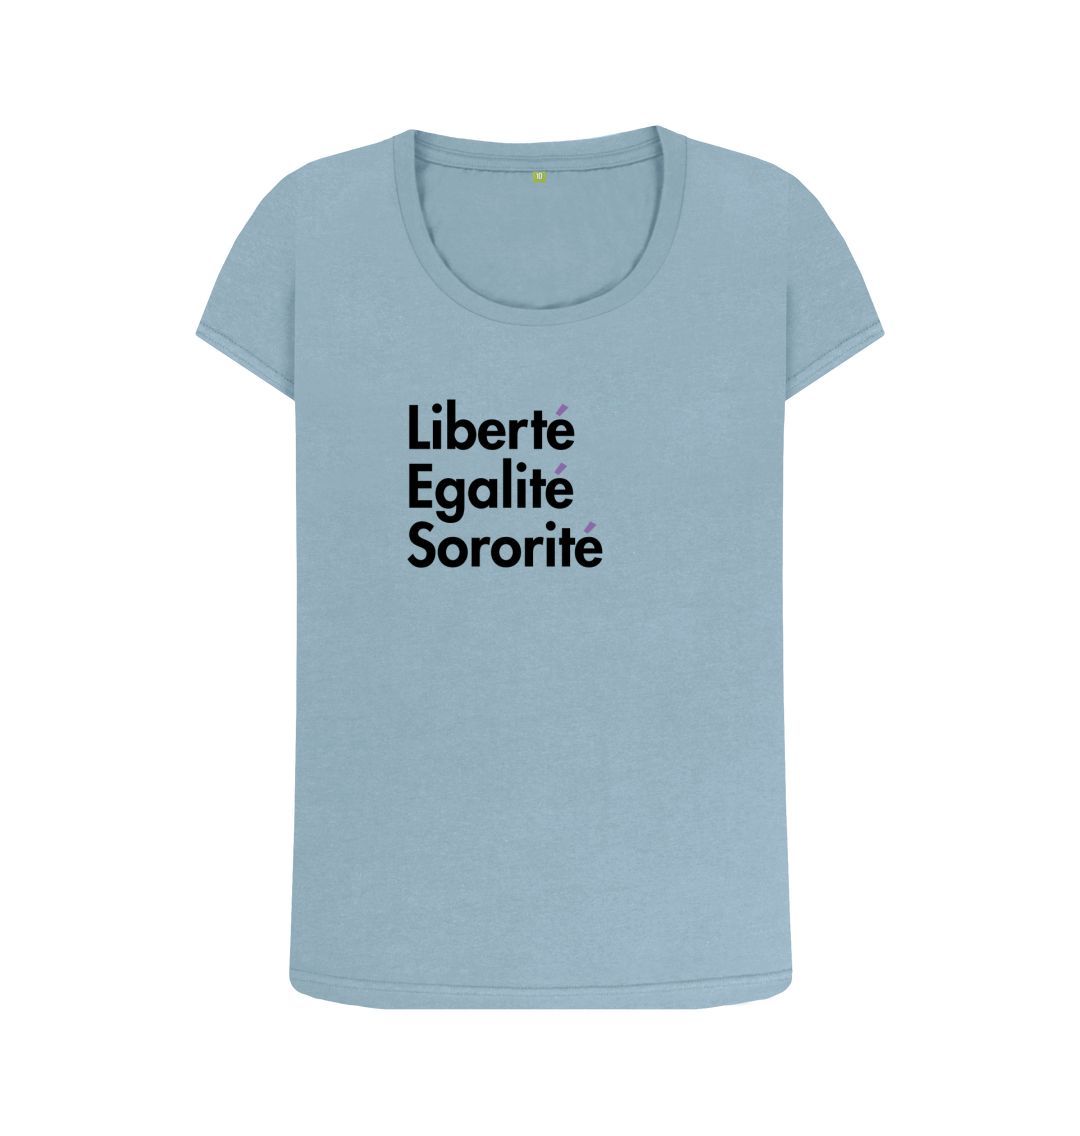 Mustard Open Neck Feminist T shirt - Libert\u00e9, Egalit\u00e9, Sororit\u00e9